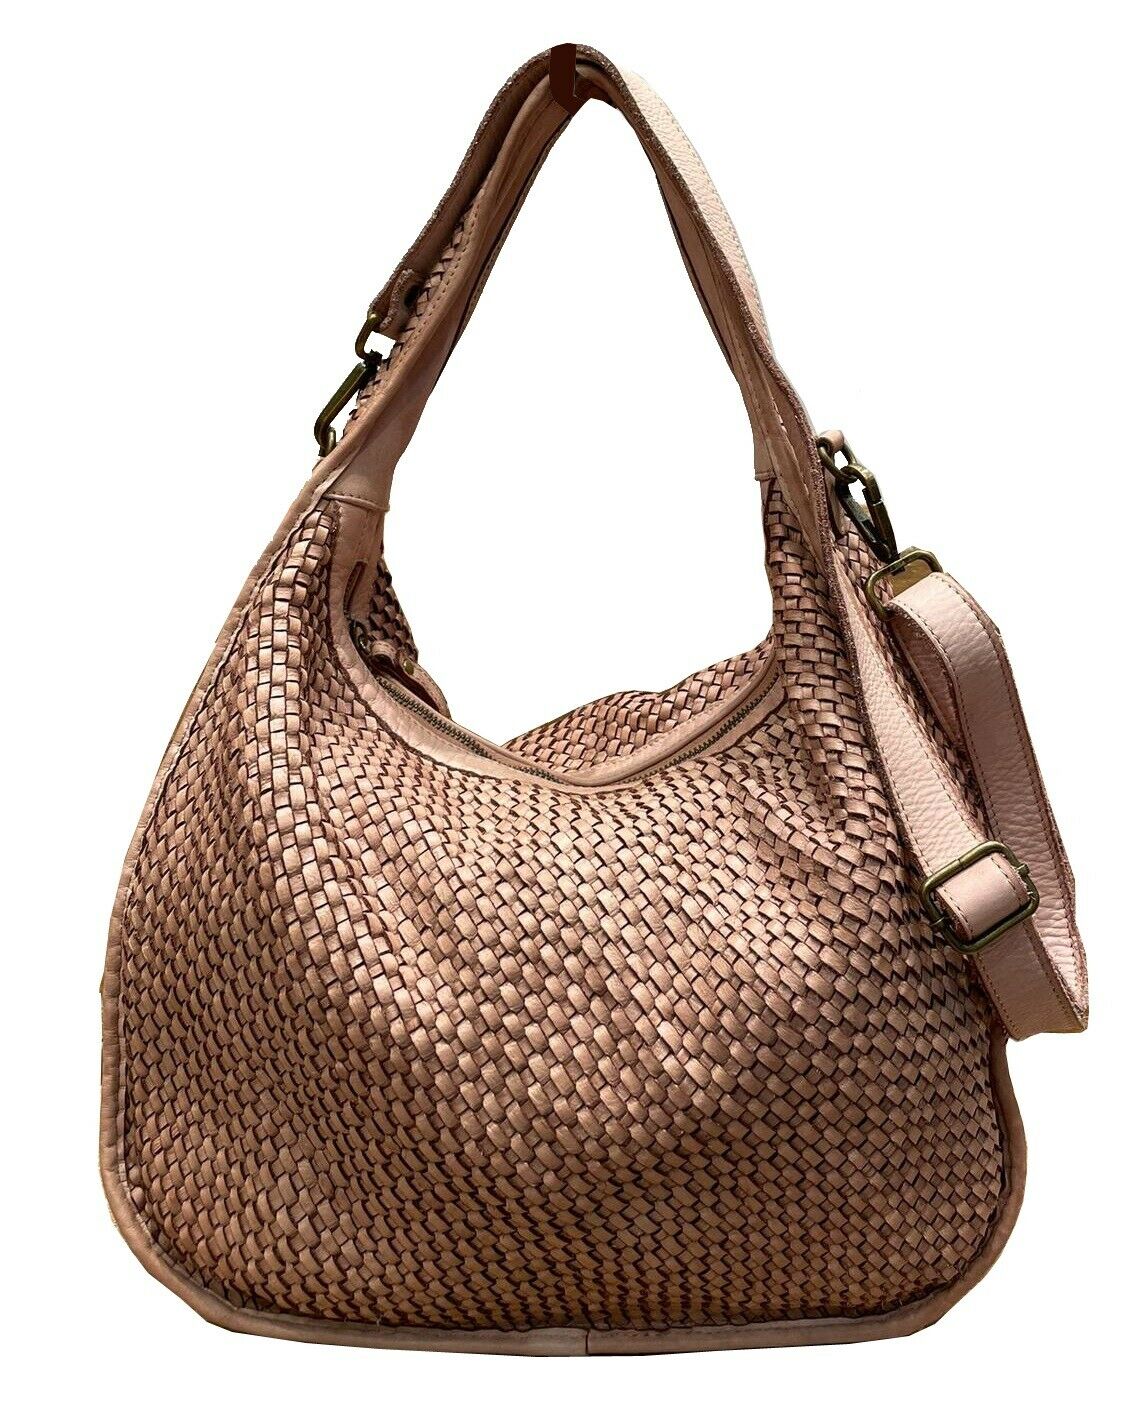 BZNA Bag Sanna Cognac Italy Designer Business Handtasche Schultertasche Tasche Leder